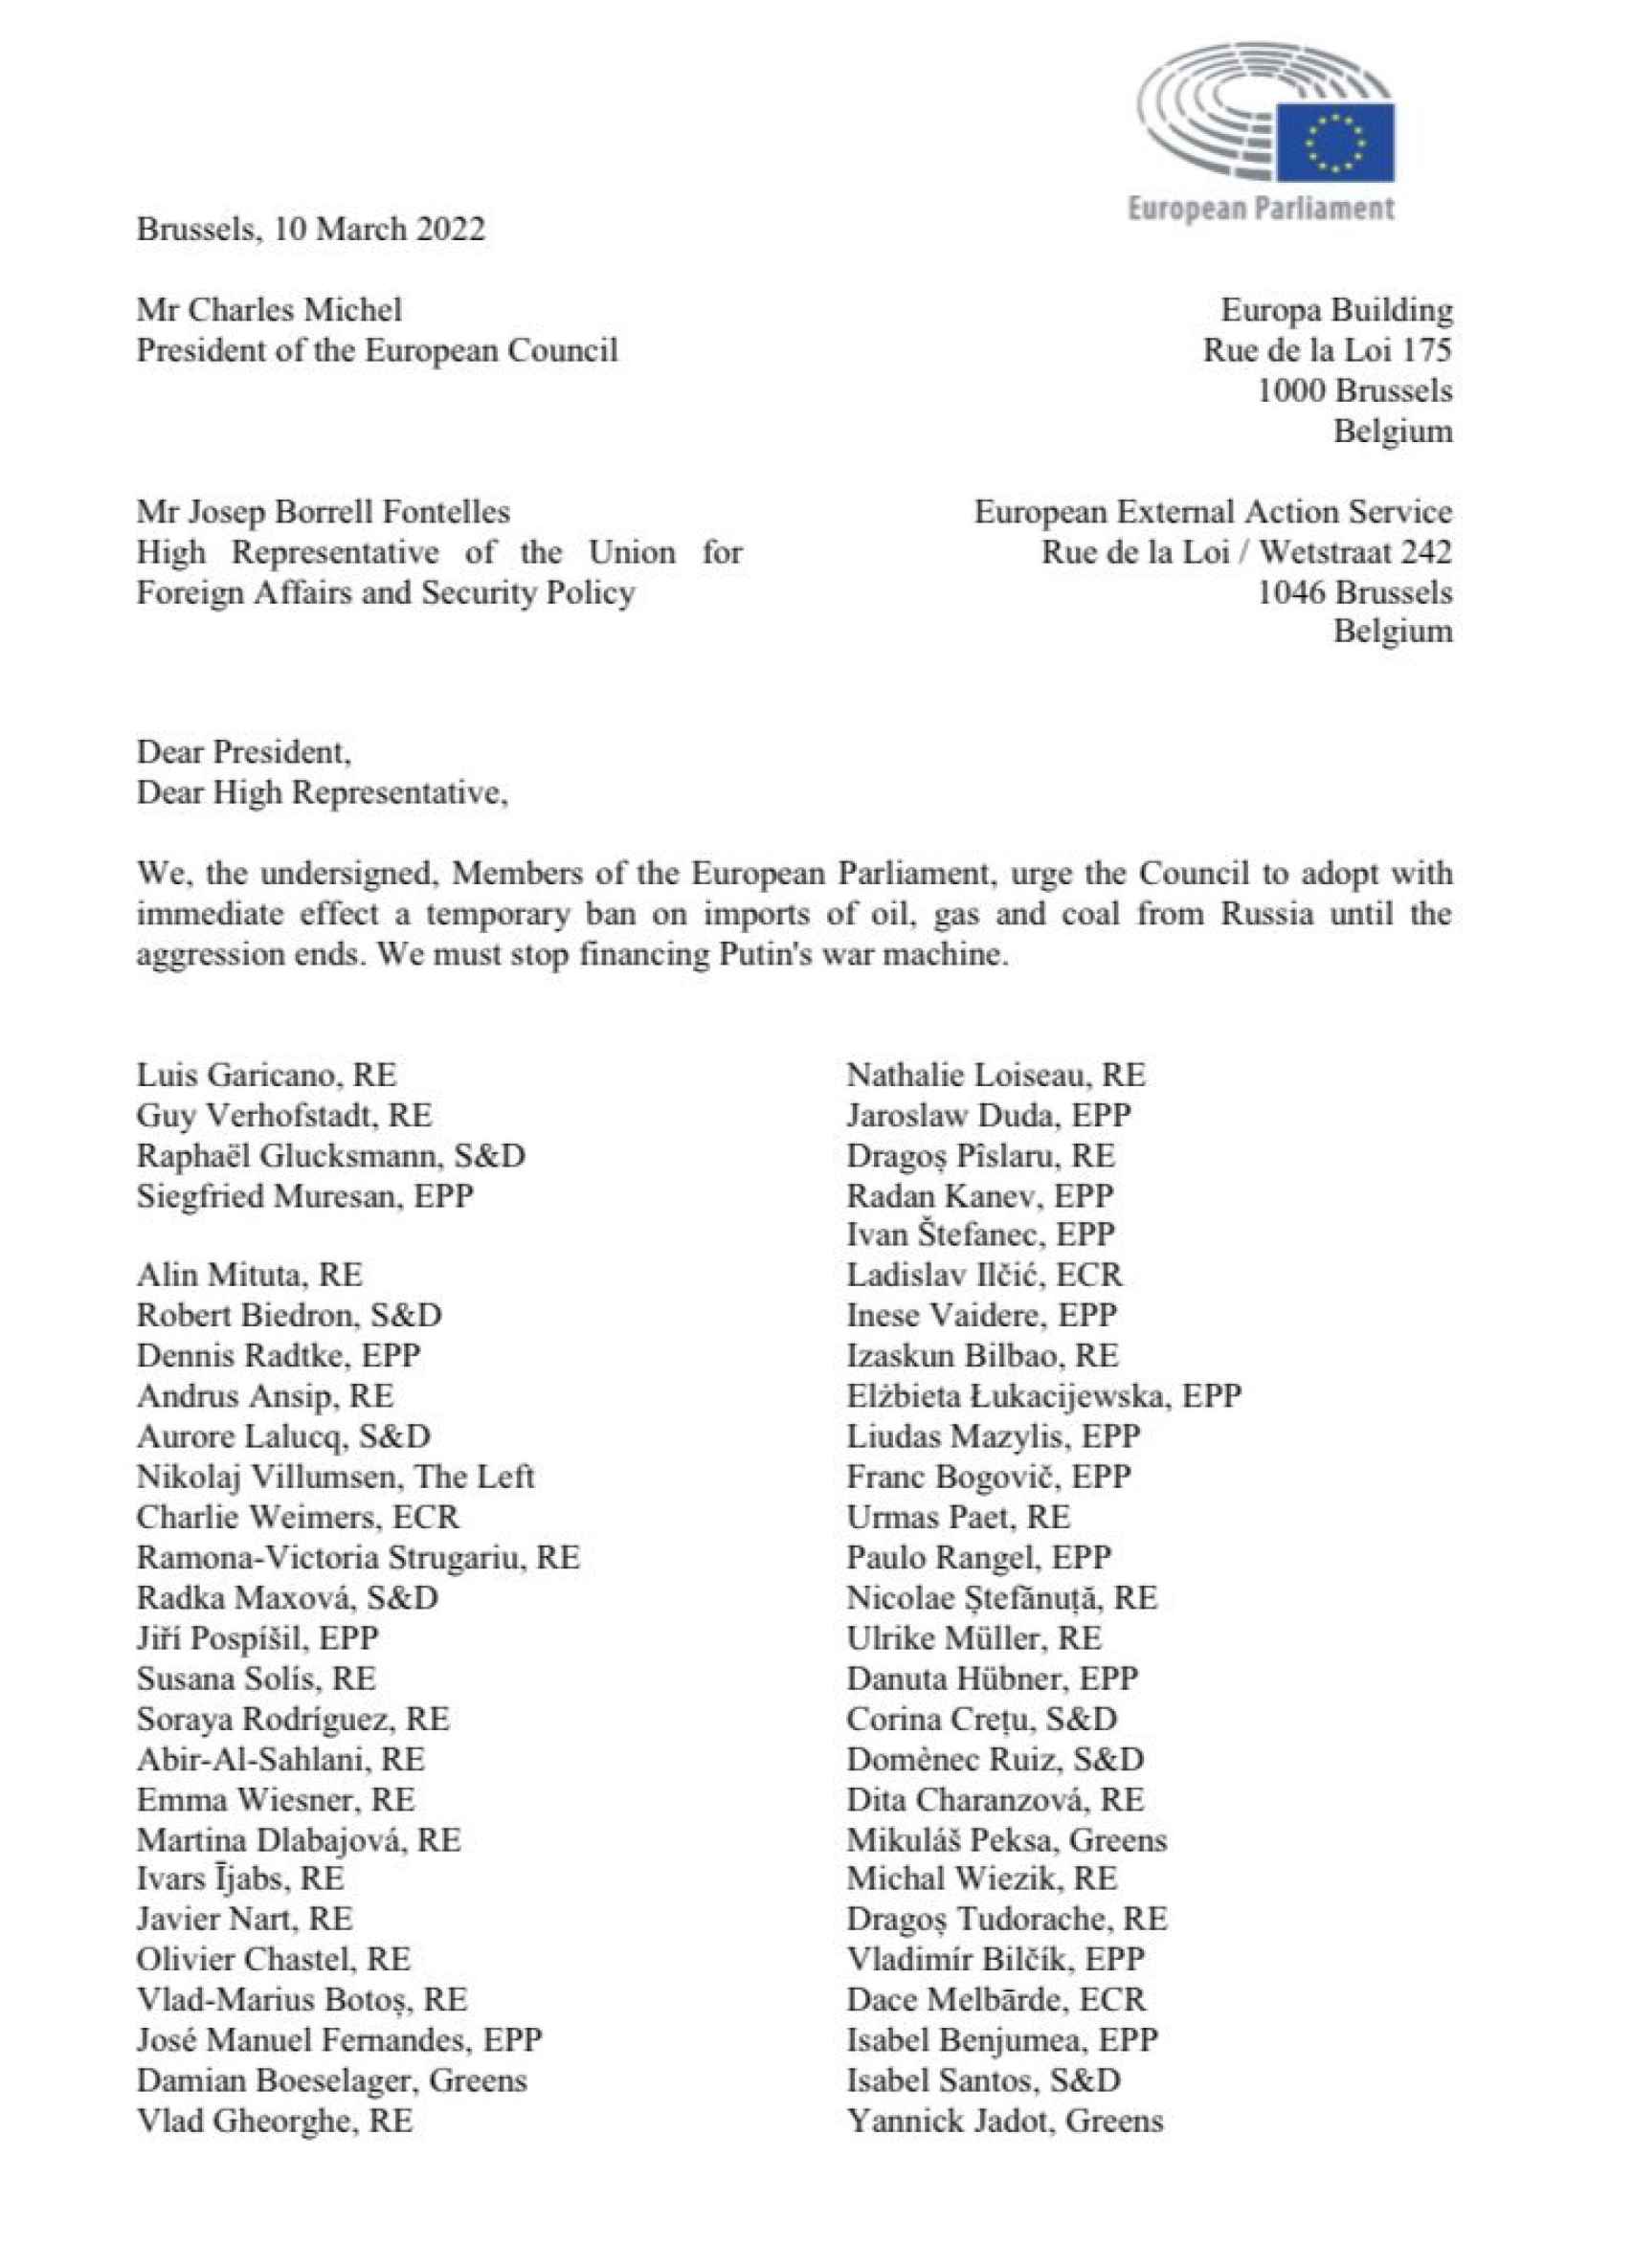 Carta de Garicano y otros 87 eurodiputados al Consejo Europeo.